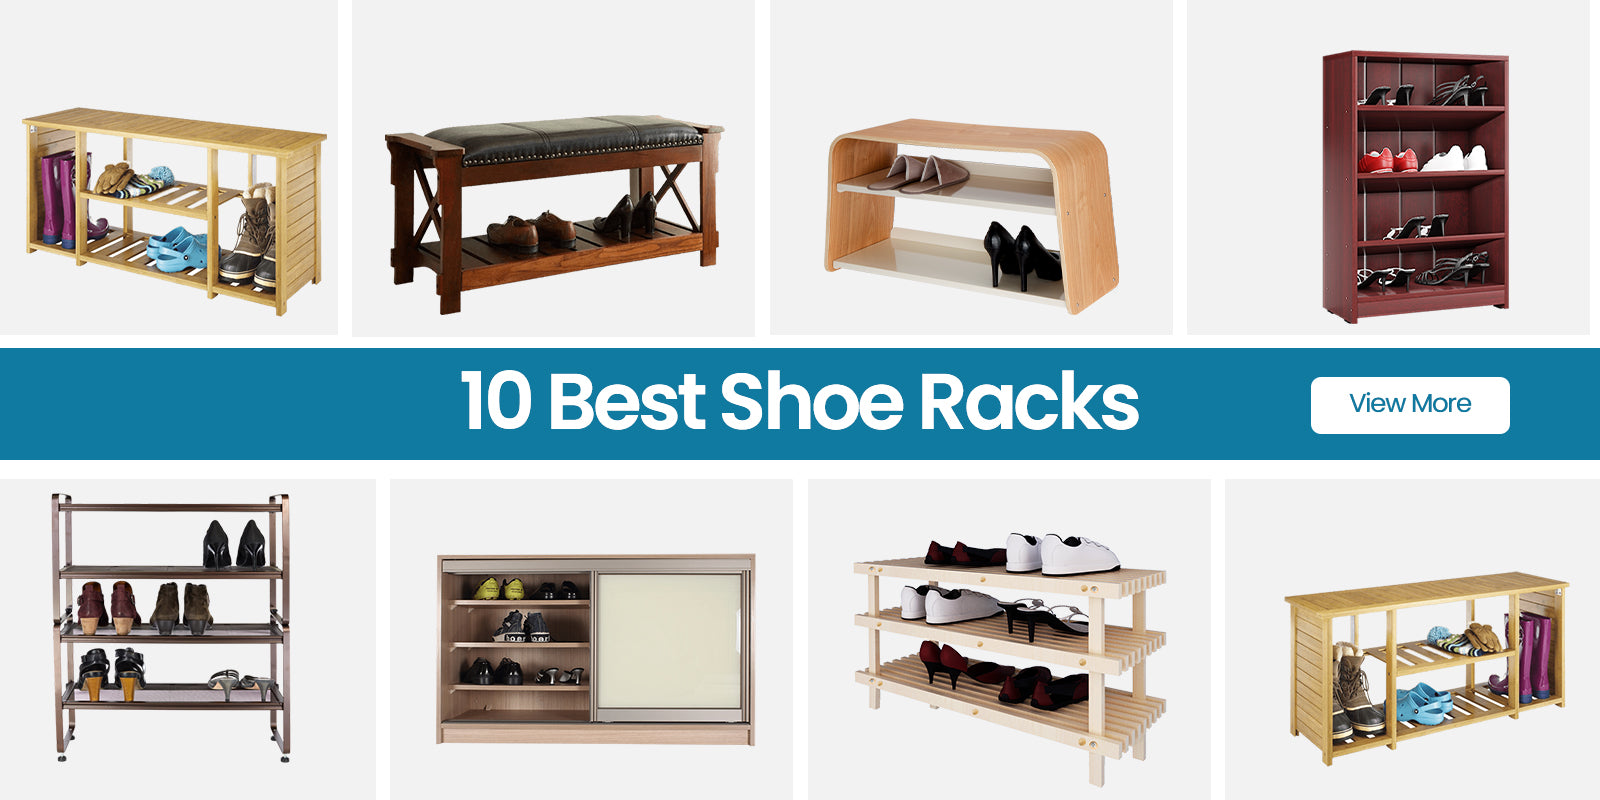 The 10 Best Shoe Racks in 2023